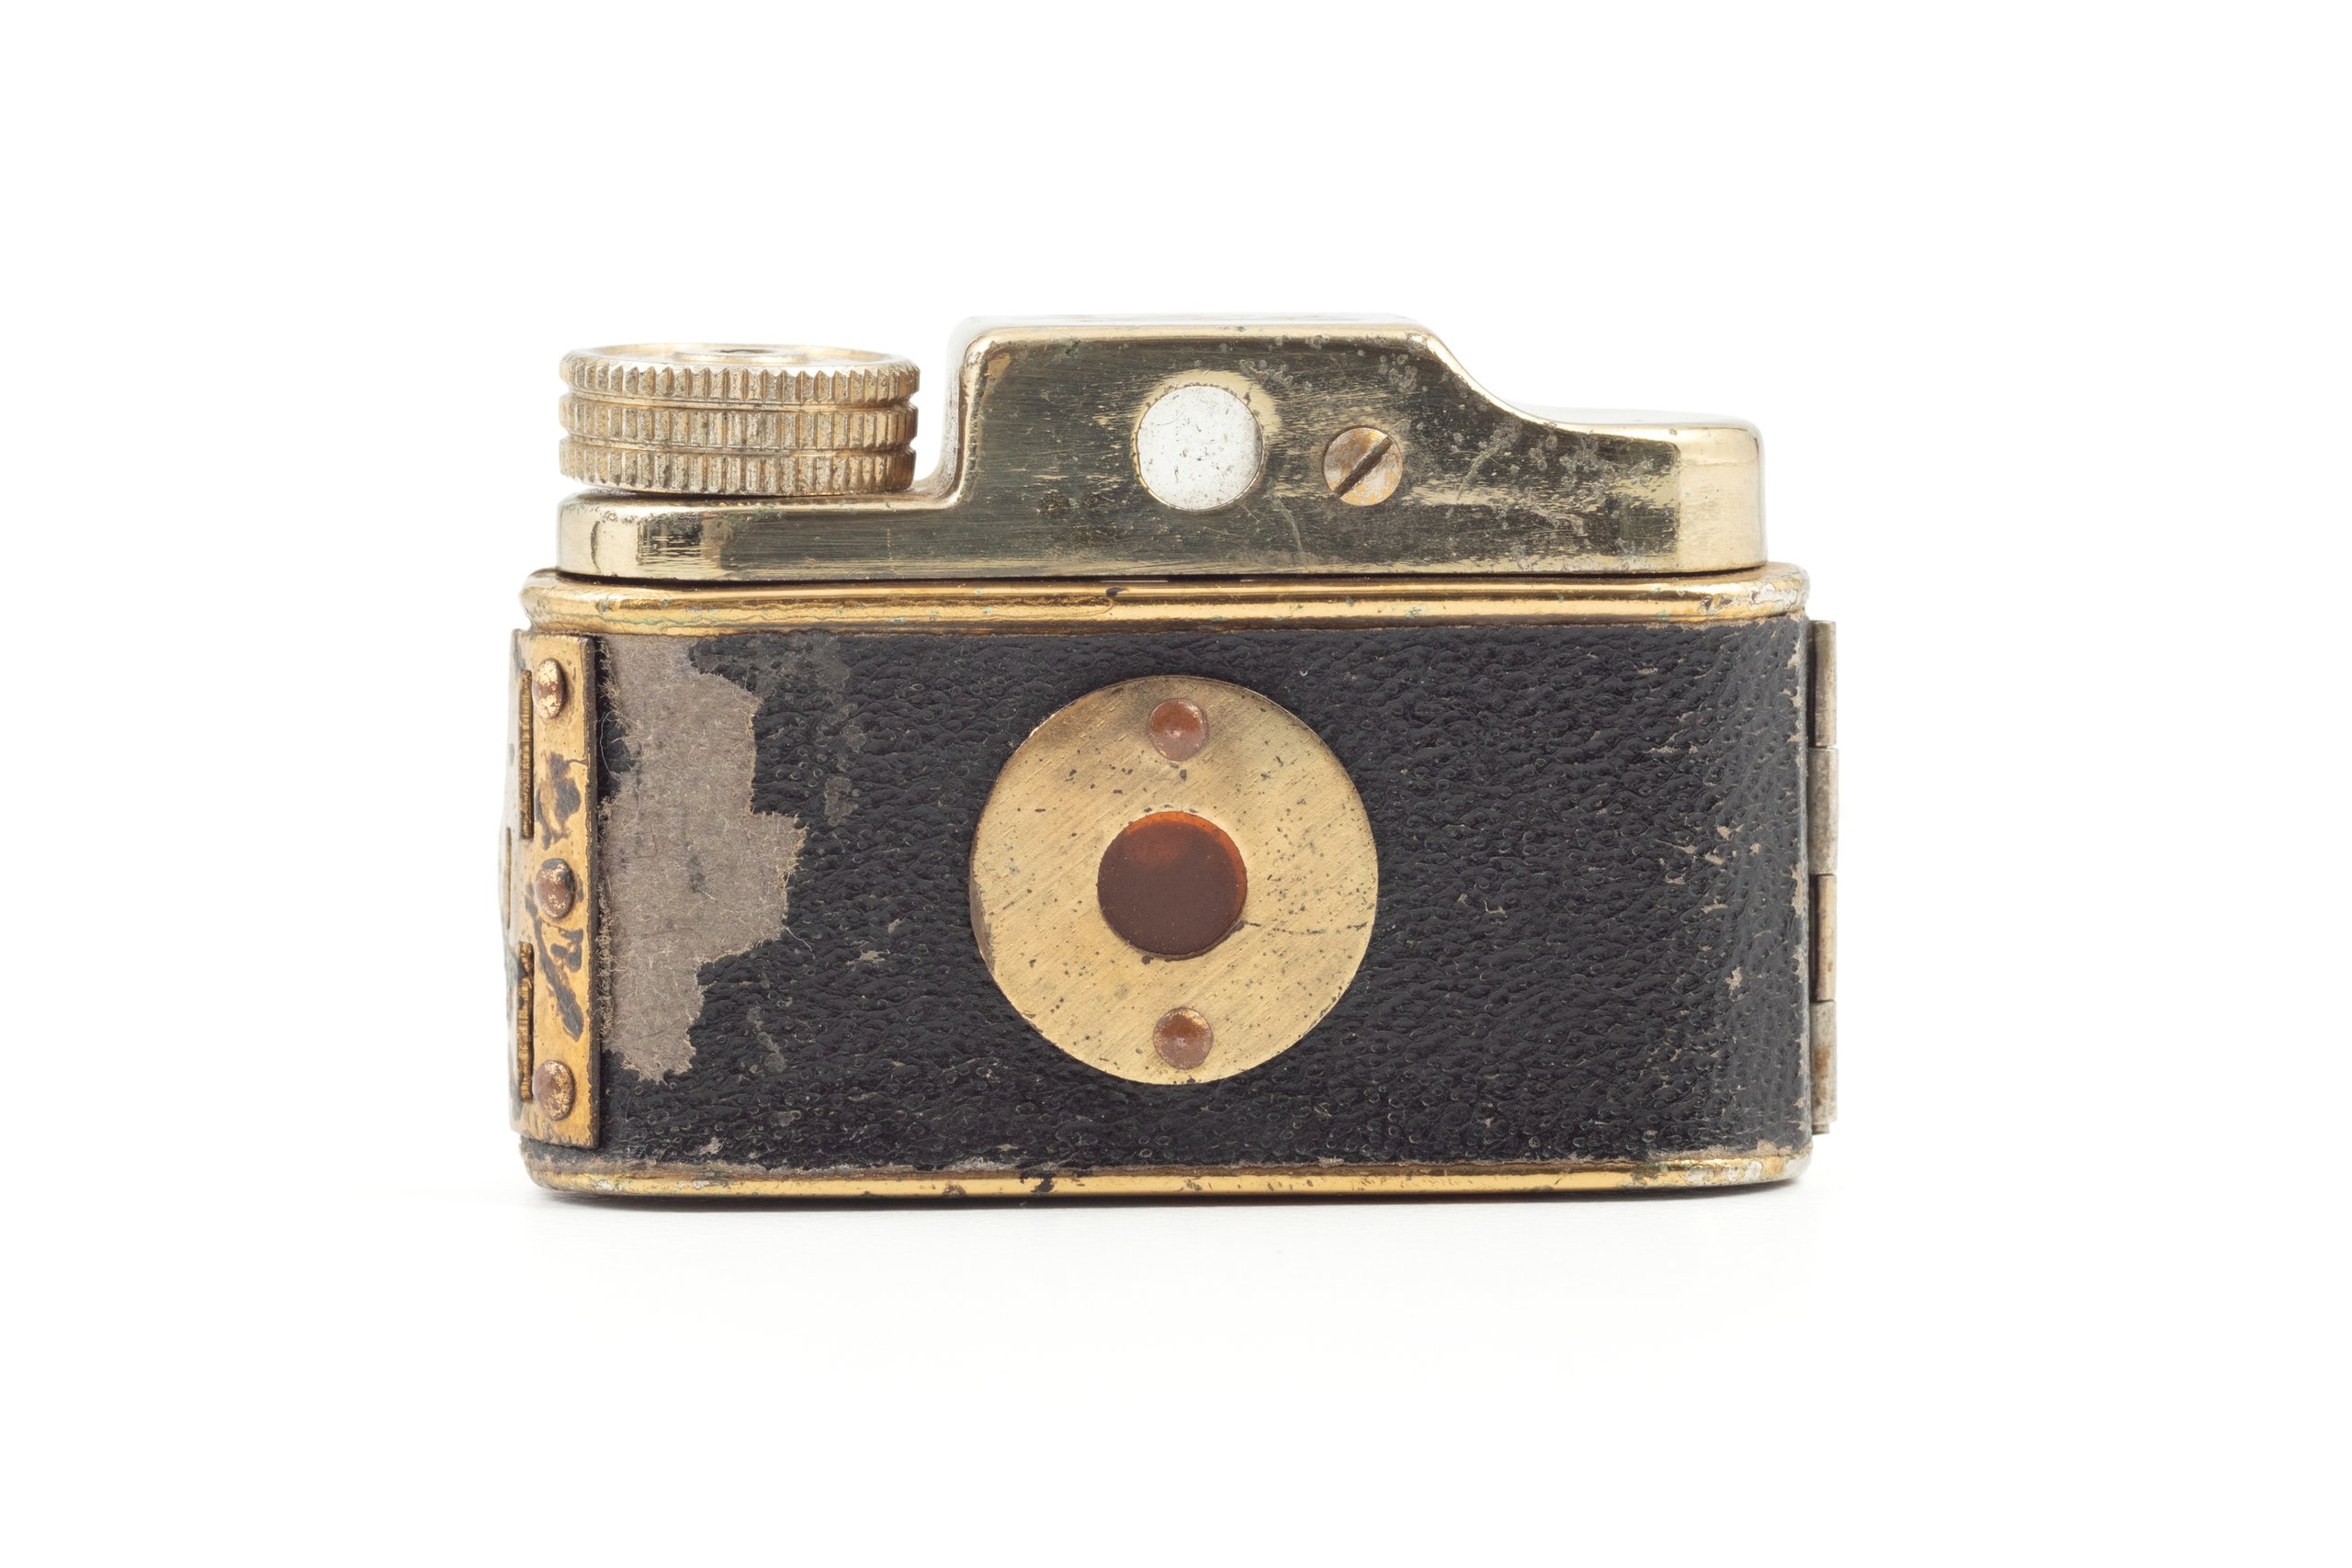 Miniature Hit camera made by Tougodo Company